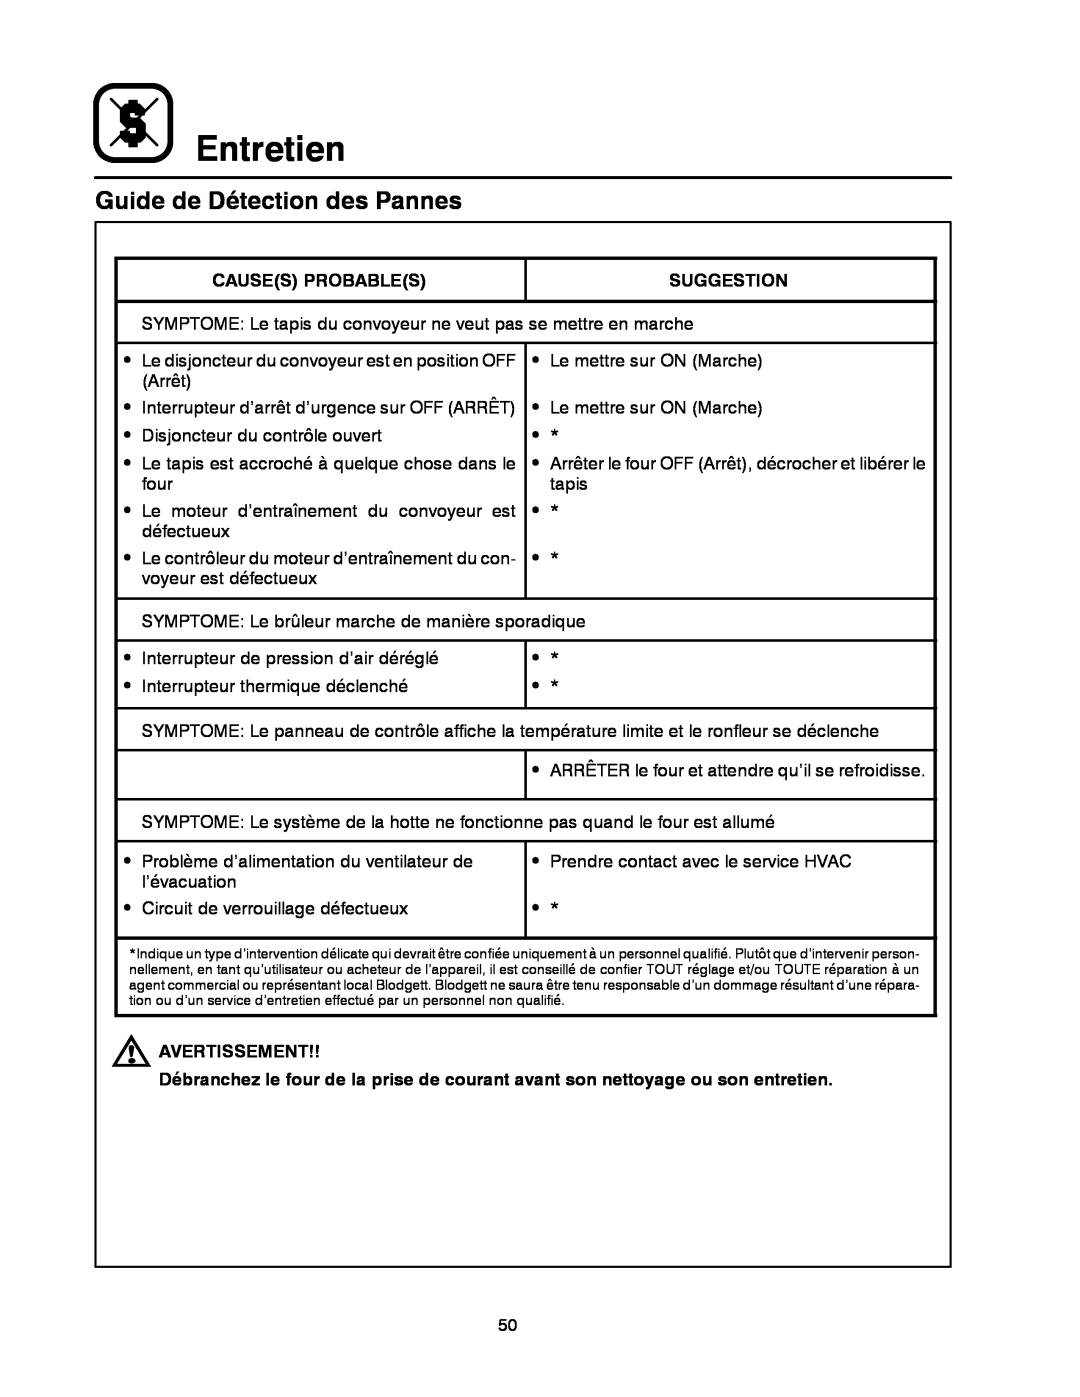 Blodgett MT3855G-G manual Entretien, Guide de Détection des Pannes 